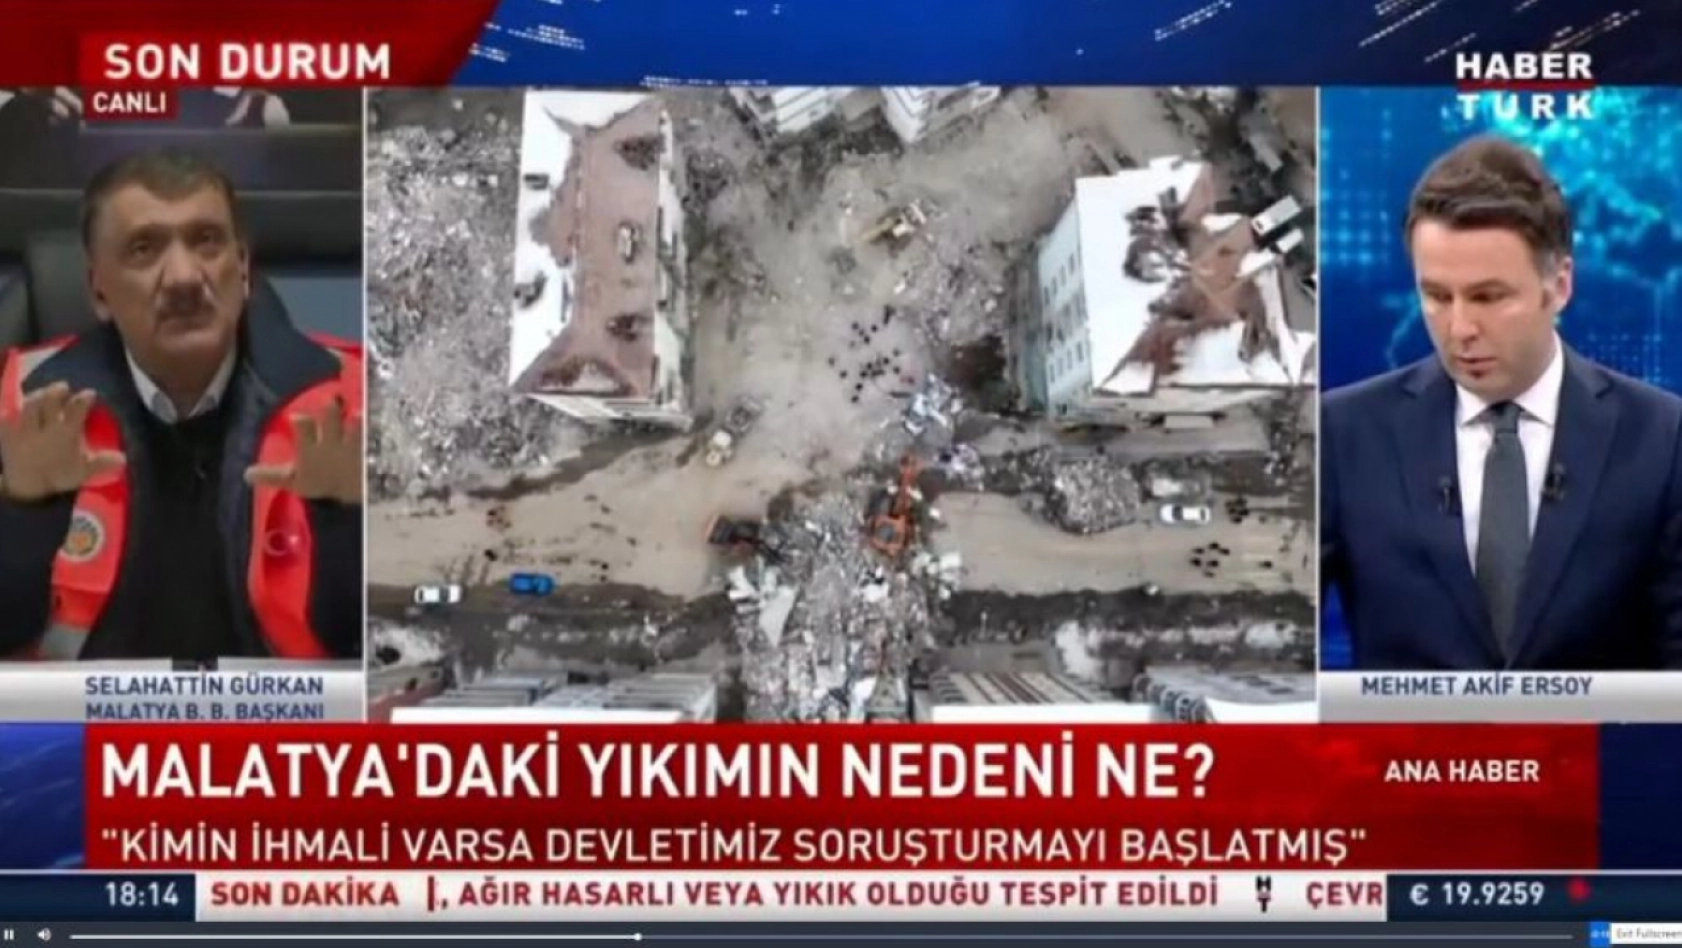 Selahattin Gürkan, Habertürk TV'nin ana haber bültenine katıldı